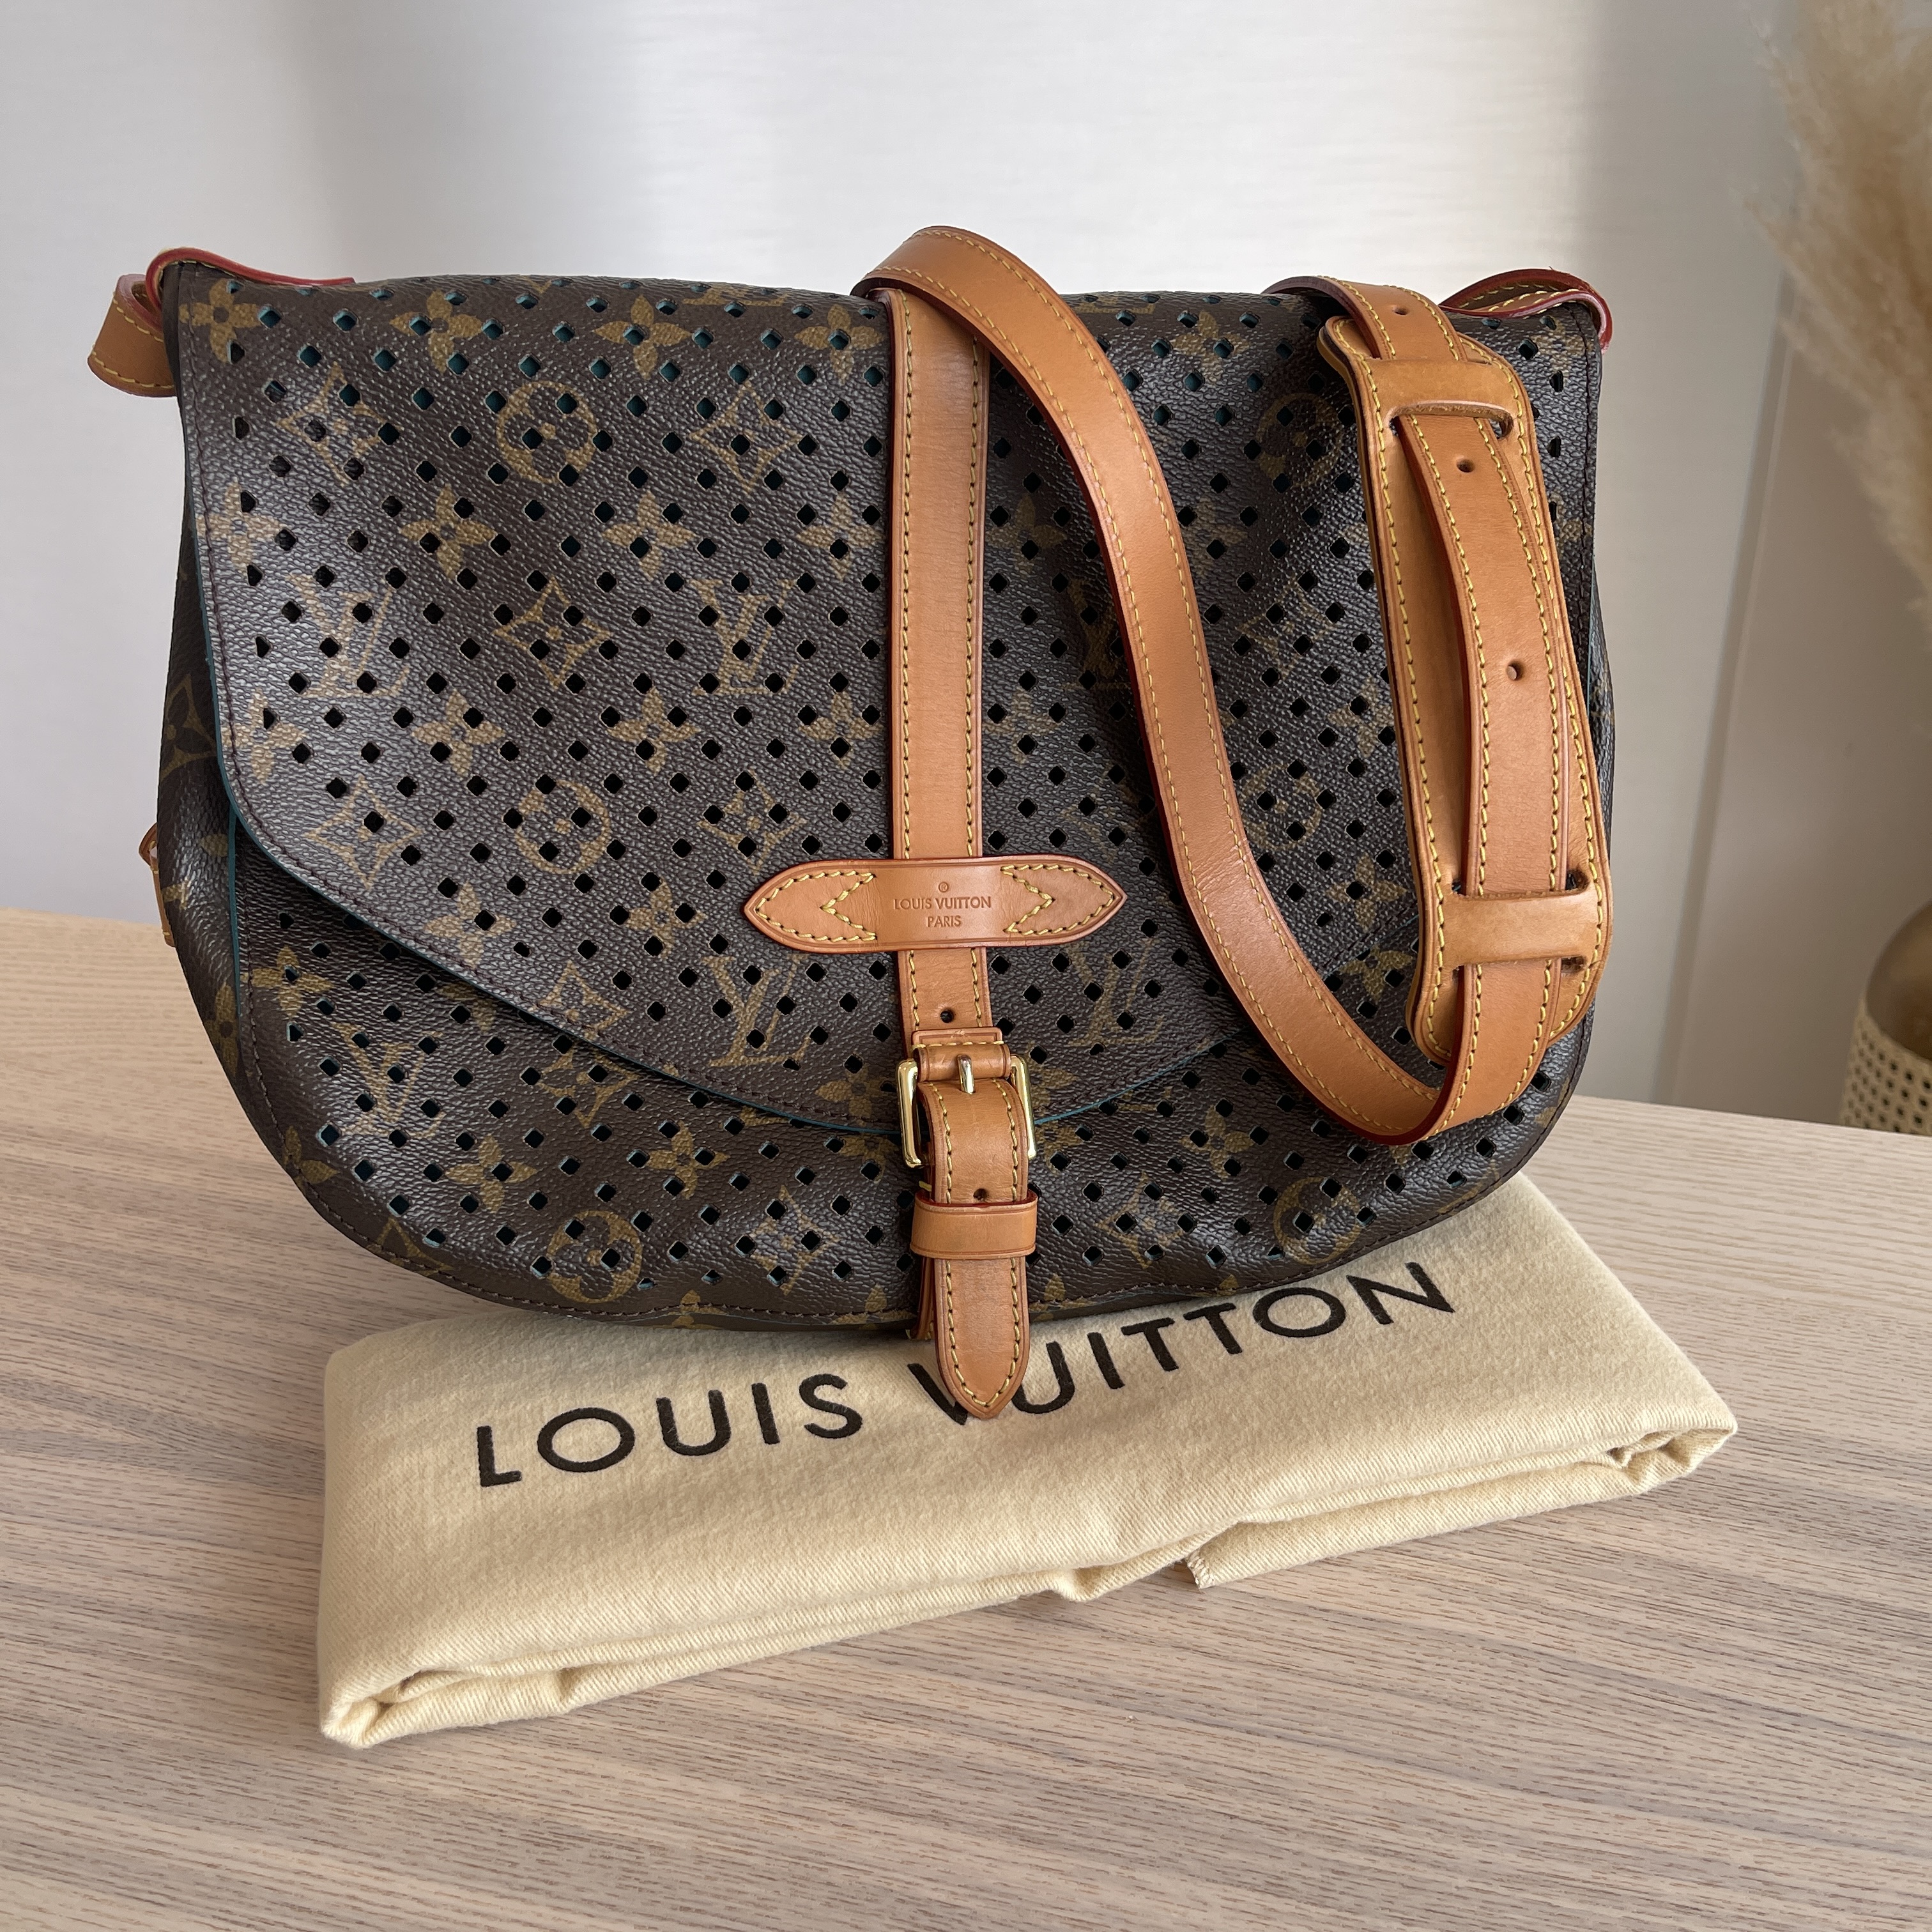 Reintroducing The Louis Vuitton Saumur Bag